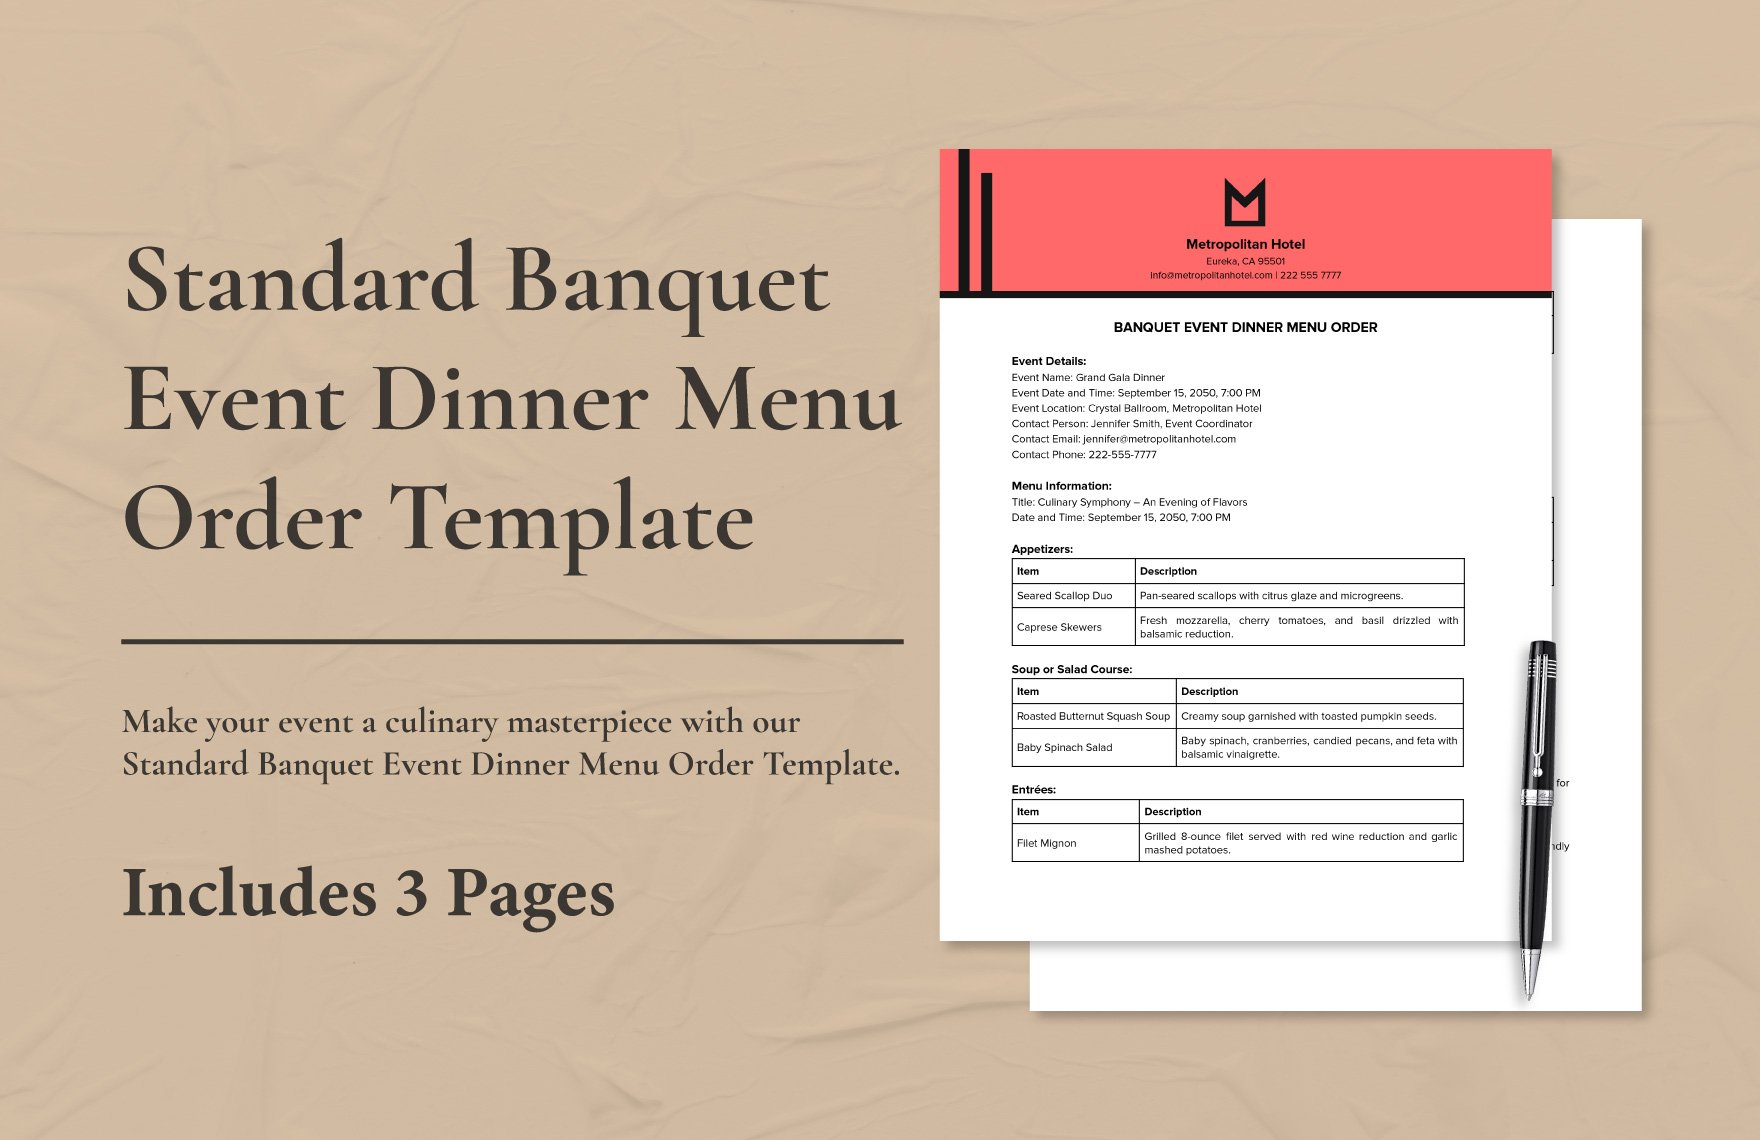 Standard Banquet Event Dinner Menu Order Template